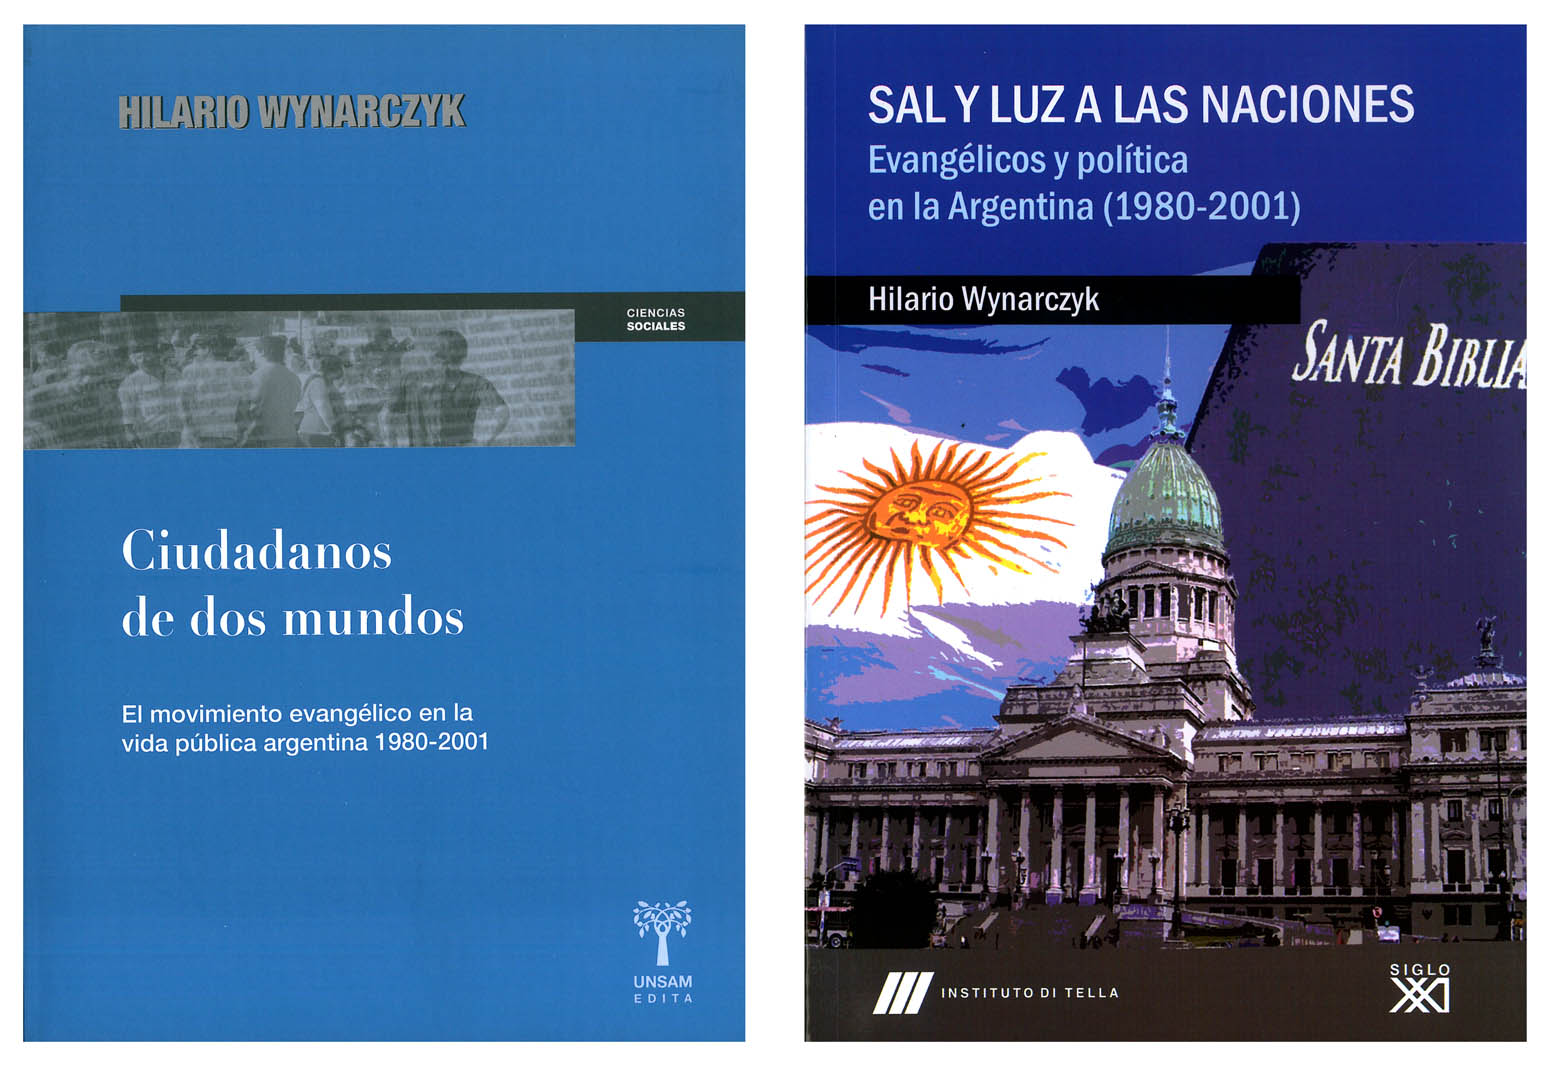 Ciudadanos de dos mundos. El movimiento evangélico en la vida pública argentina 1980-2001